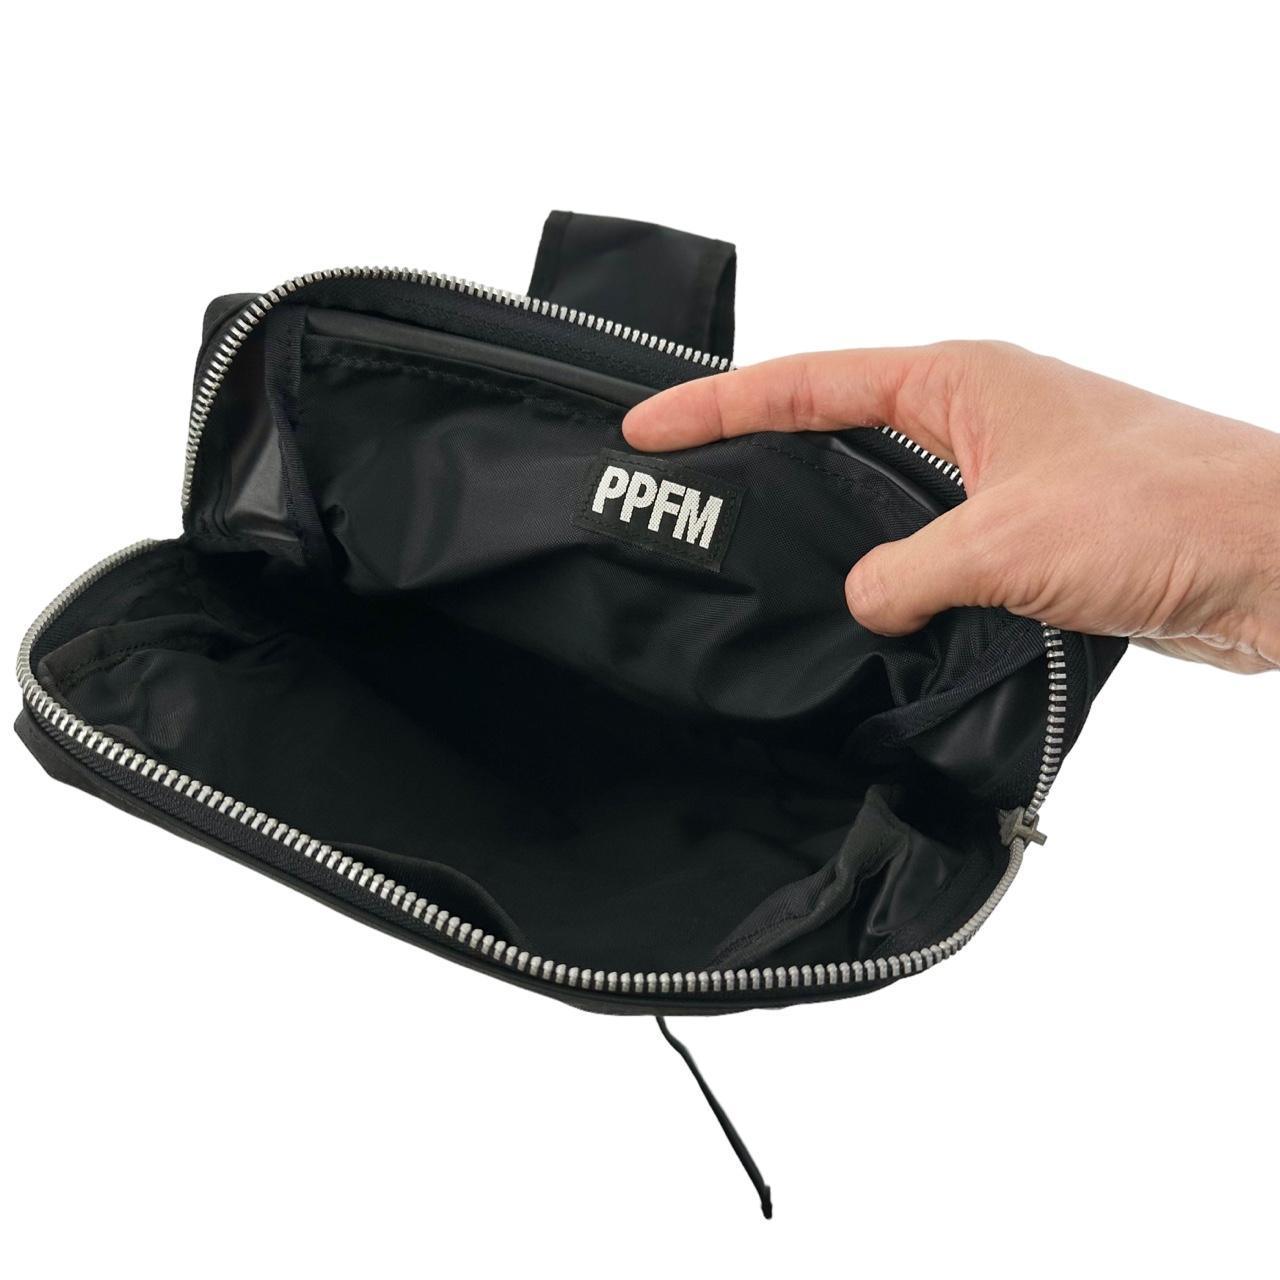 Vintage PPFM Japanese Pocket Sling Bag - Known Source